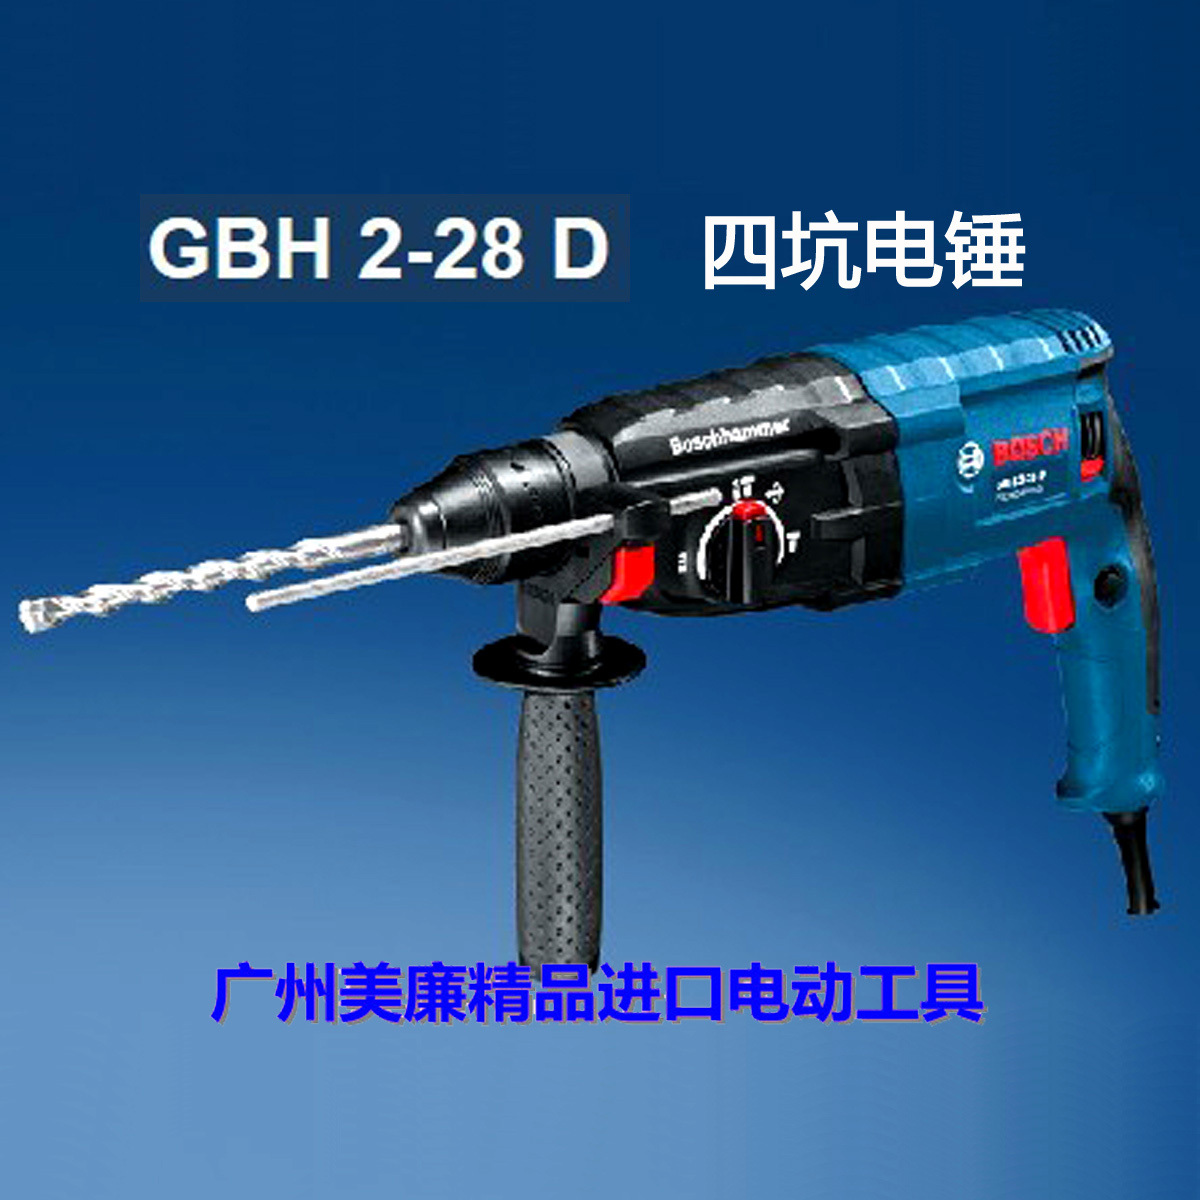 德国原厂生产 2012新款bosch博世gbh2-28d 专业级四坑电锤/电镐